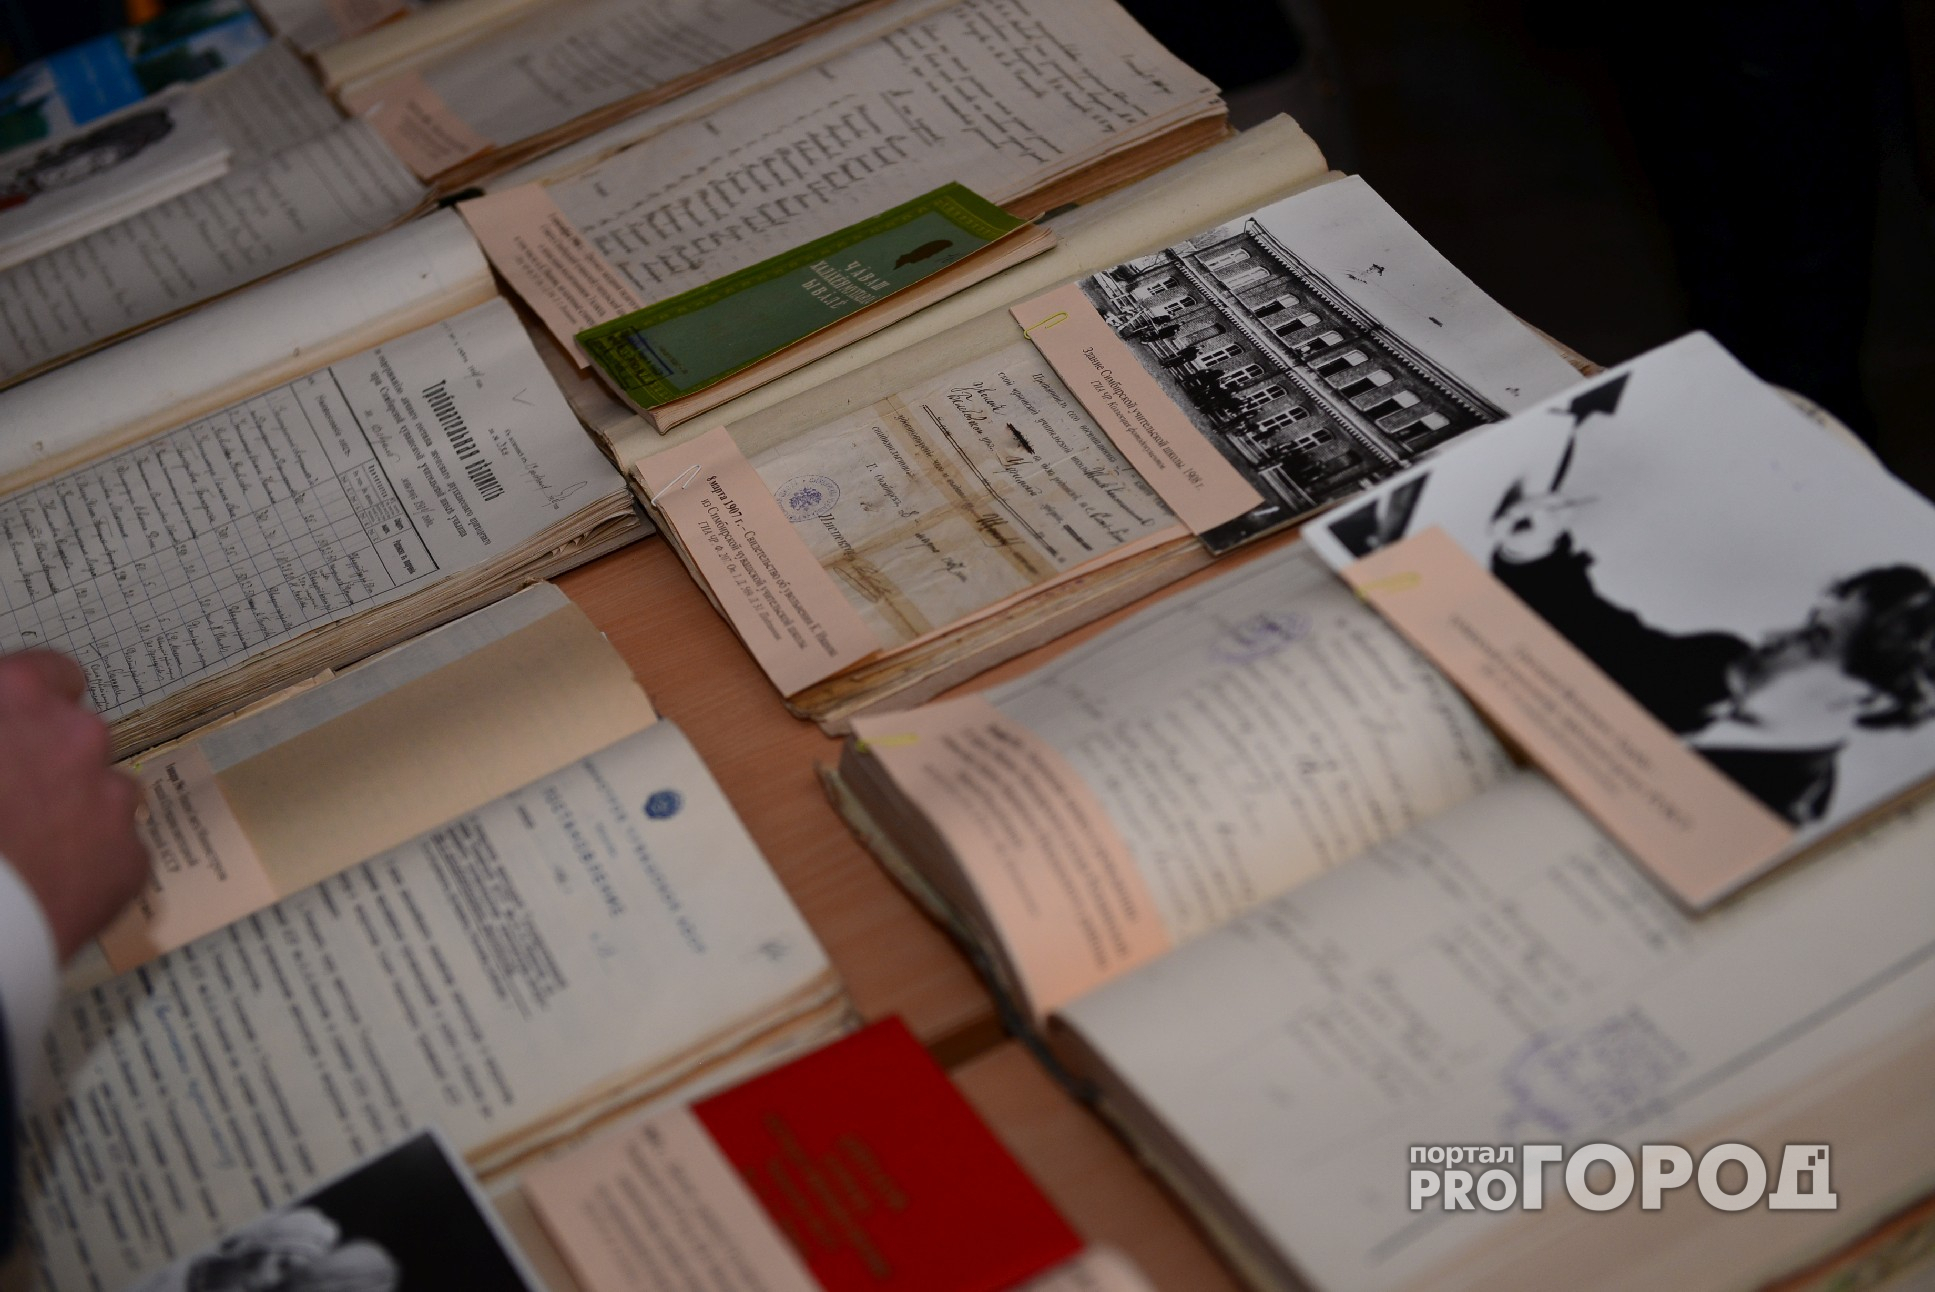 Сыктывкарка продаёт домашнюю библиотеку за миллион рублей (фото)